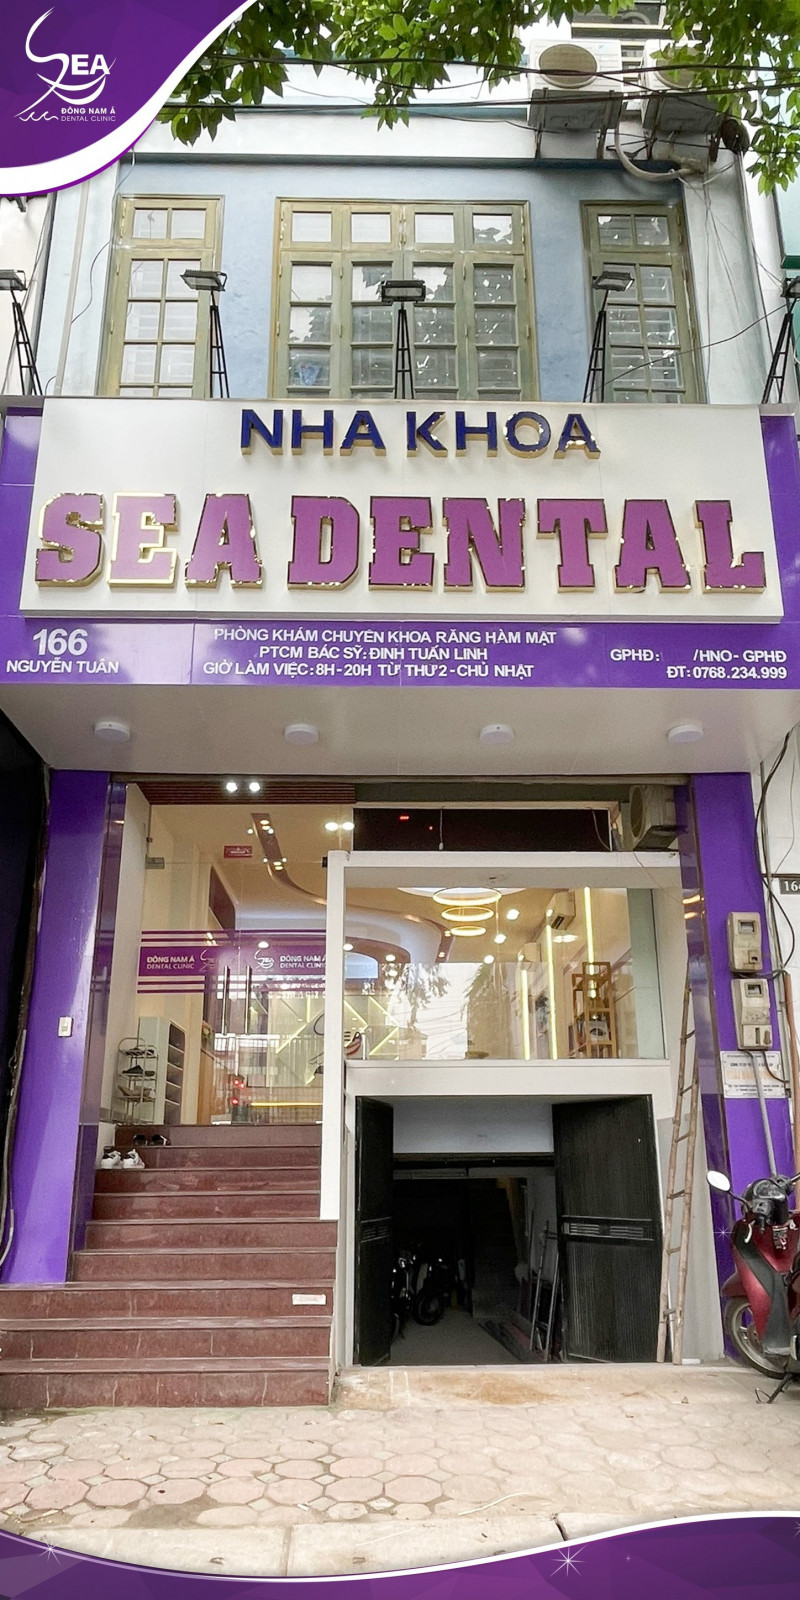 Nha khoa Sea Dental